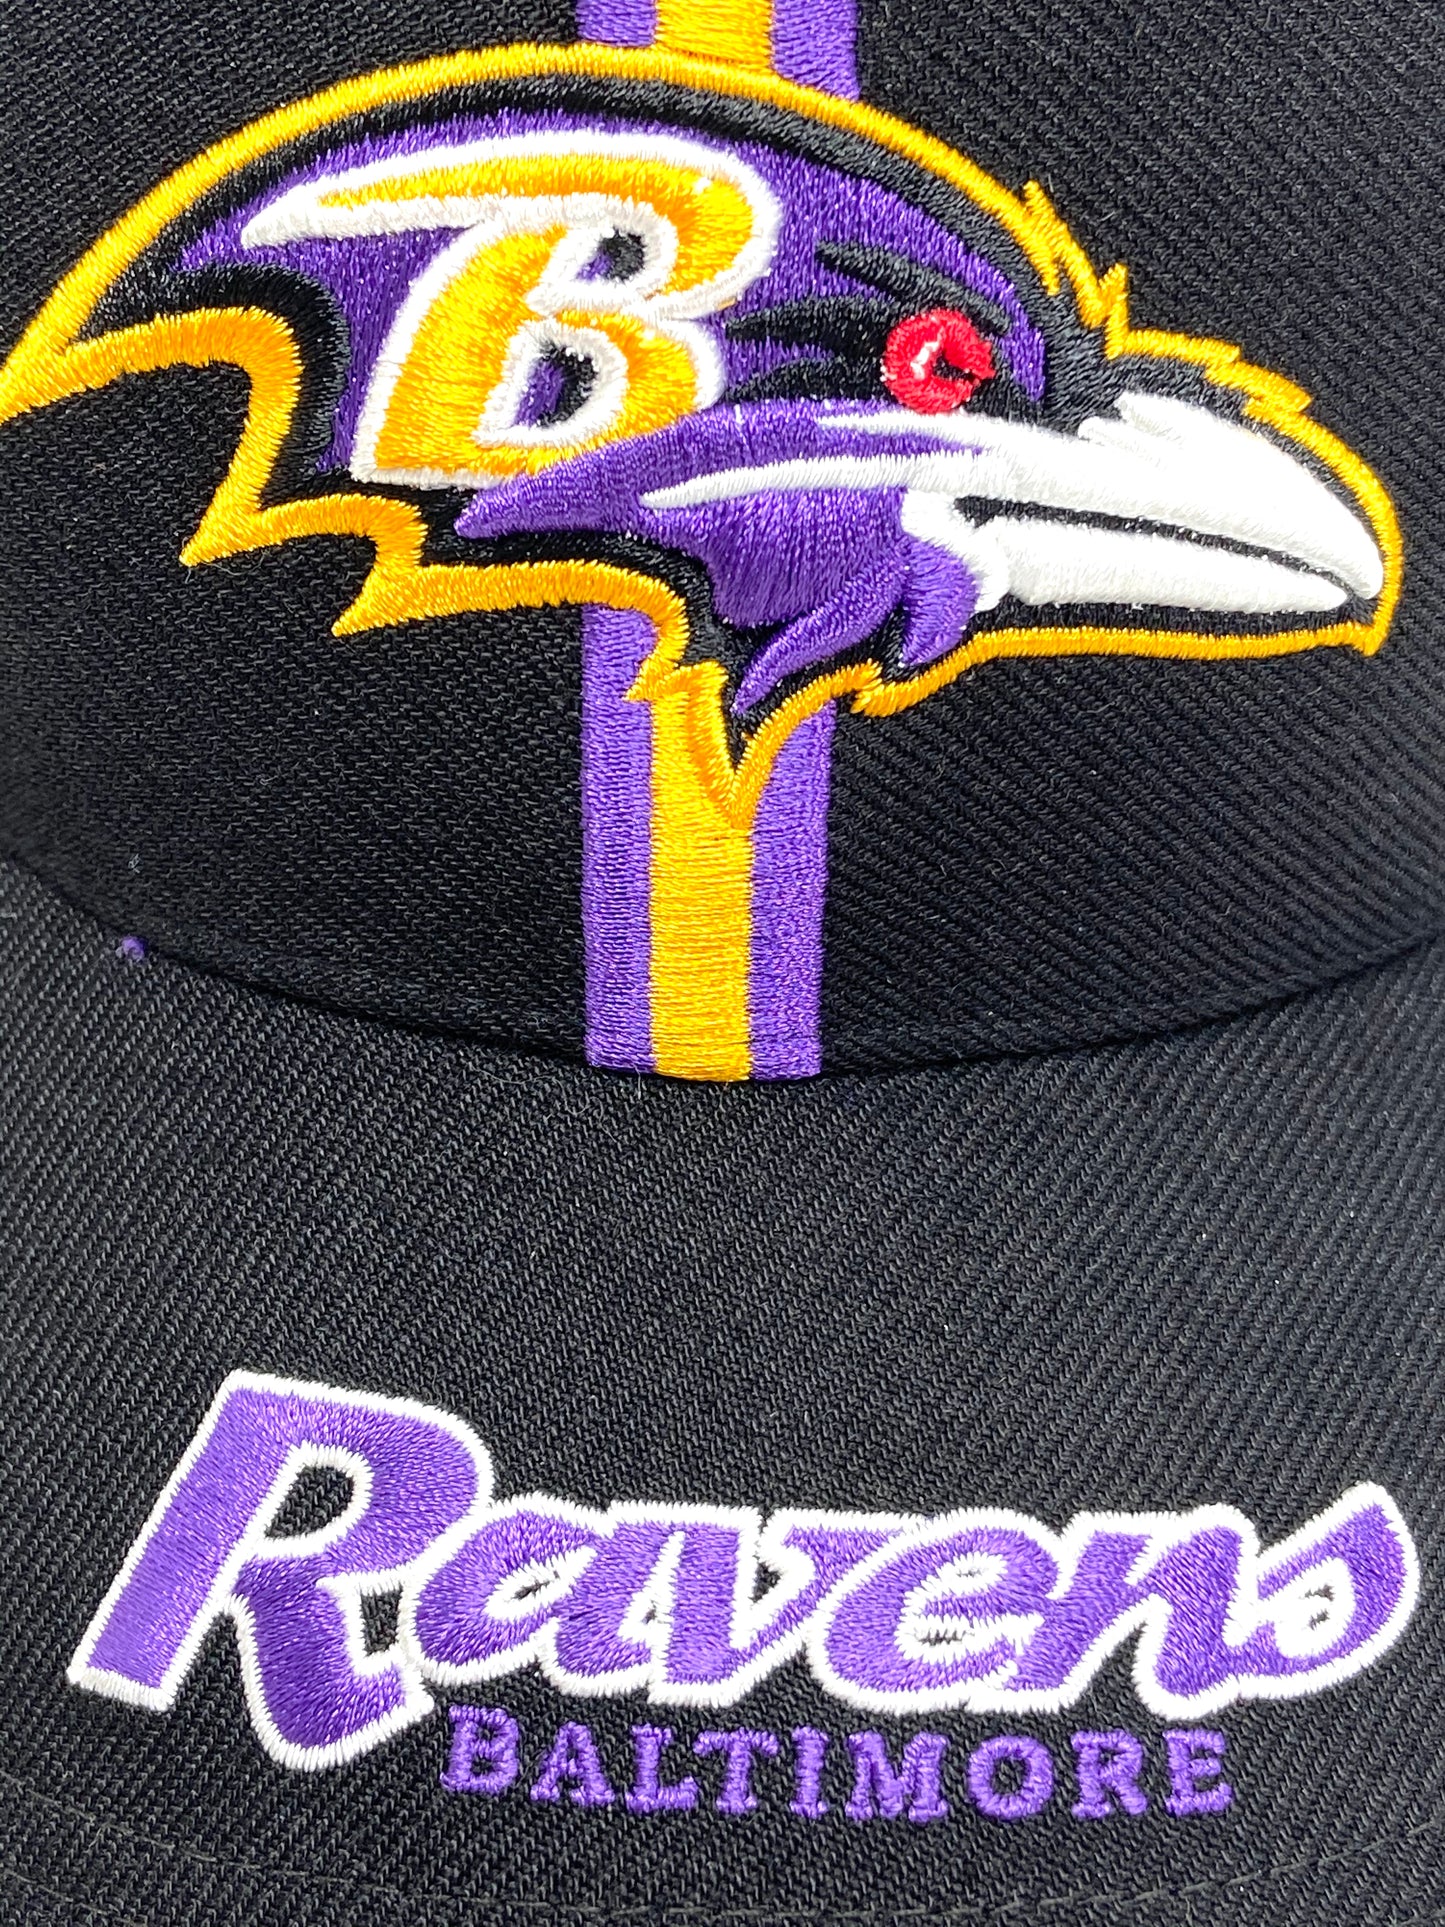 Baltimore Ravens Vintage NFL Purple 15% Wool 3-D Logo Cap by Twins Ent.